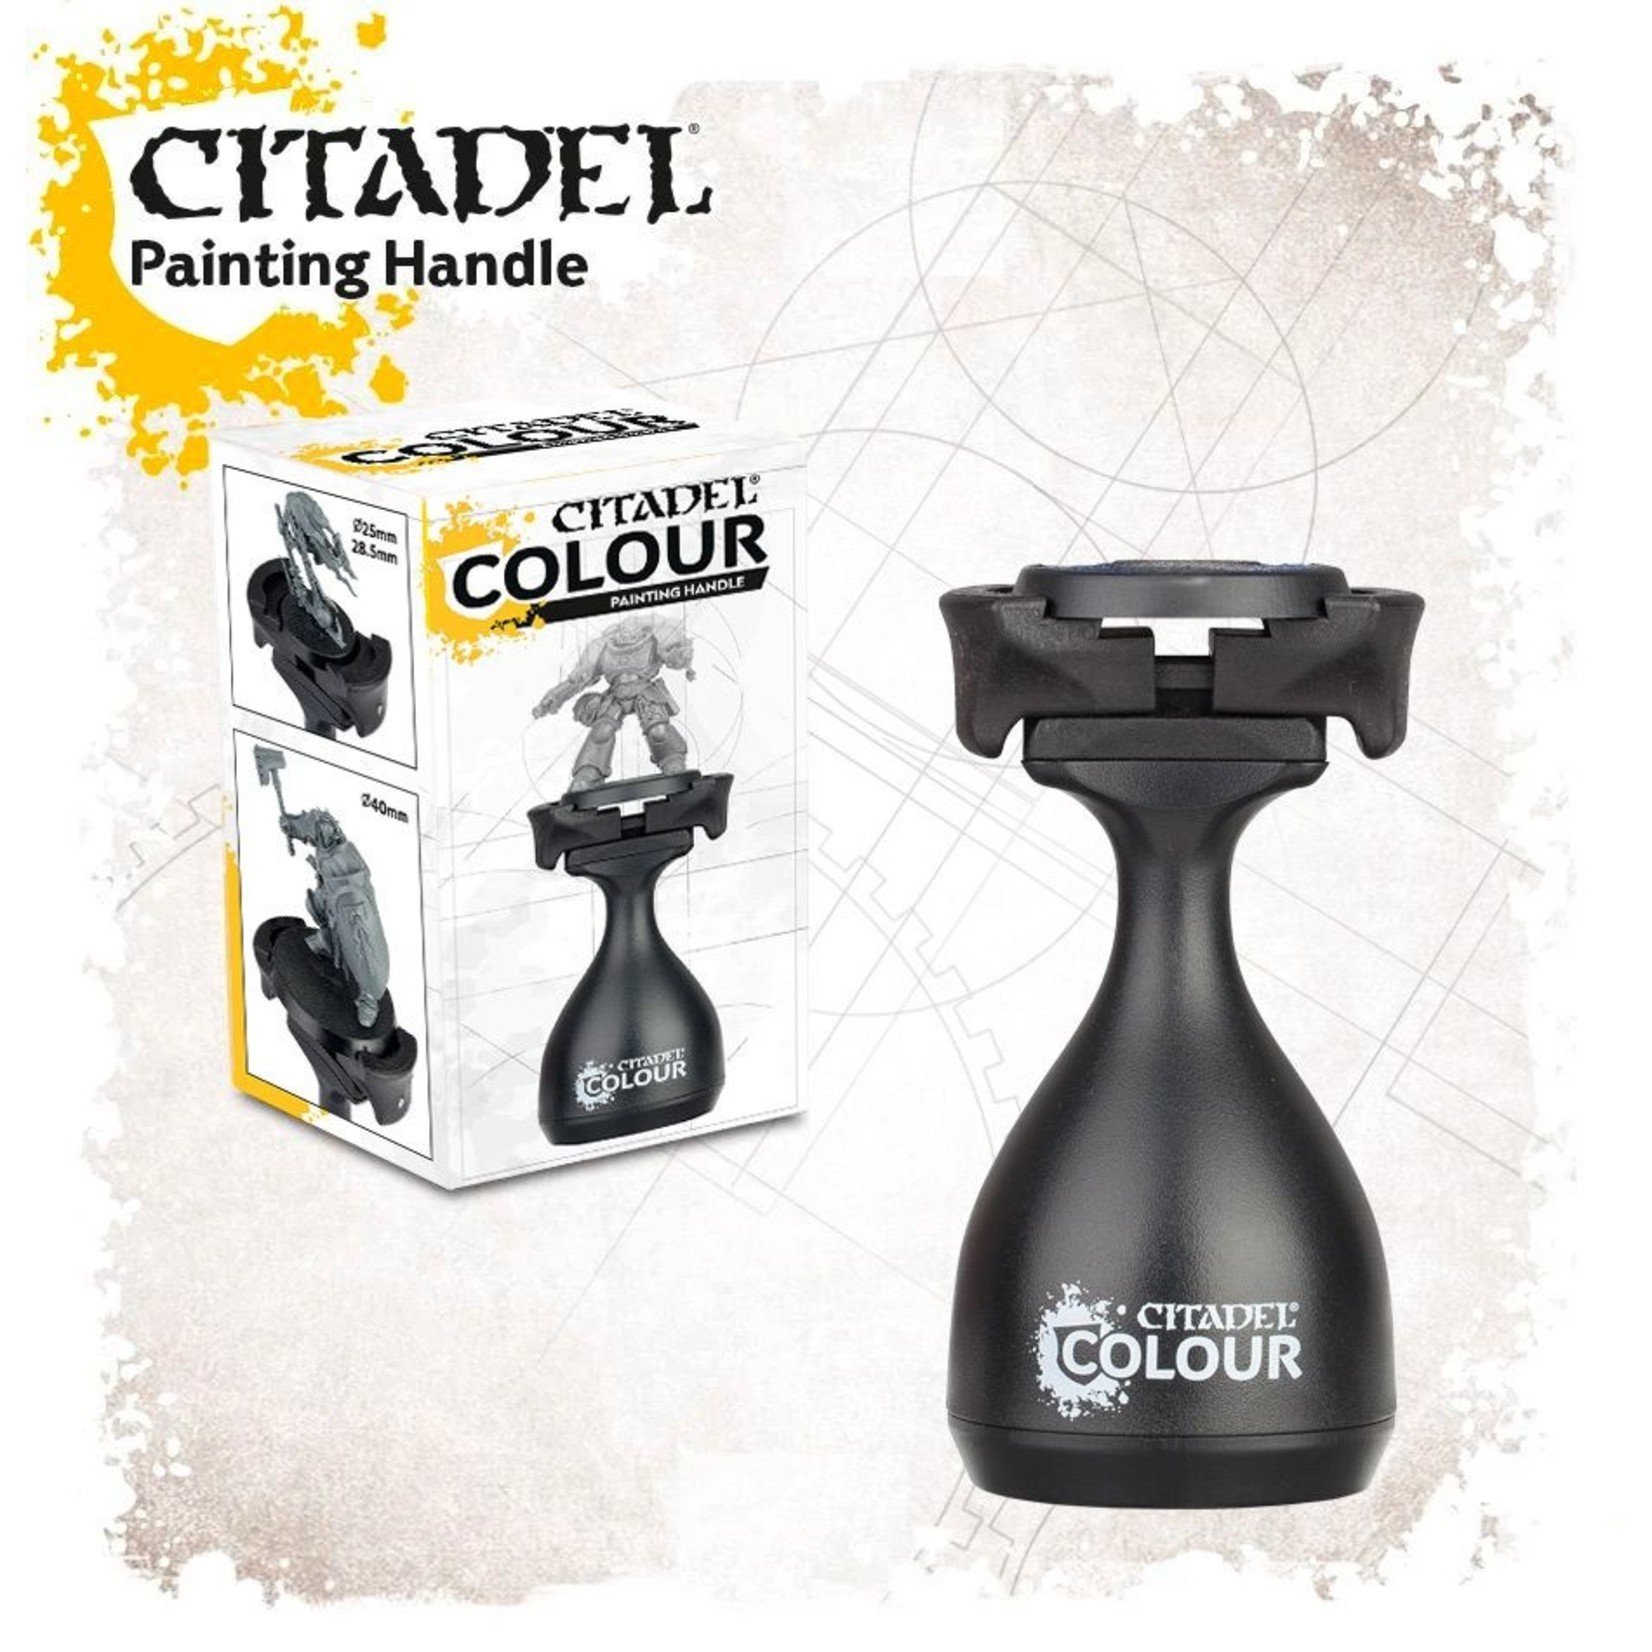 Games Workshop Citadel Colour Painting Handle